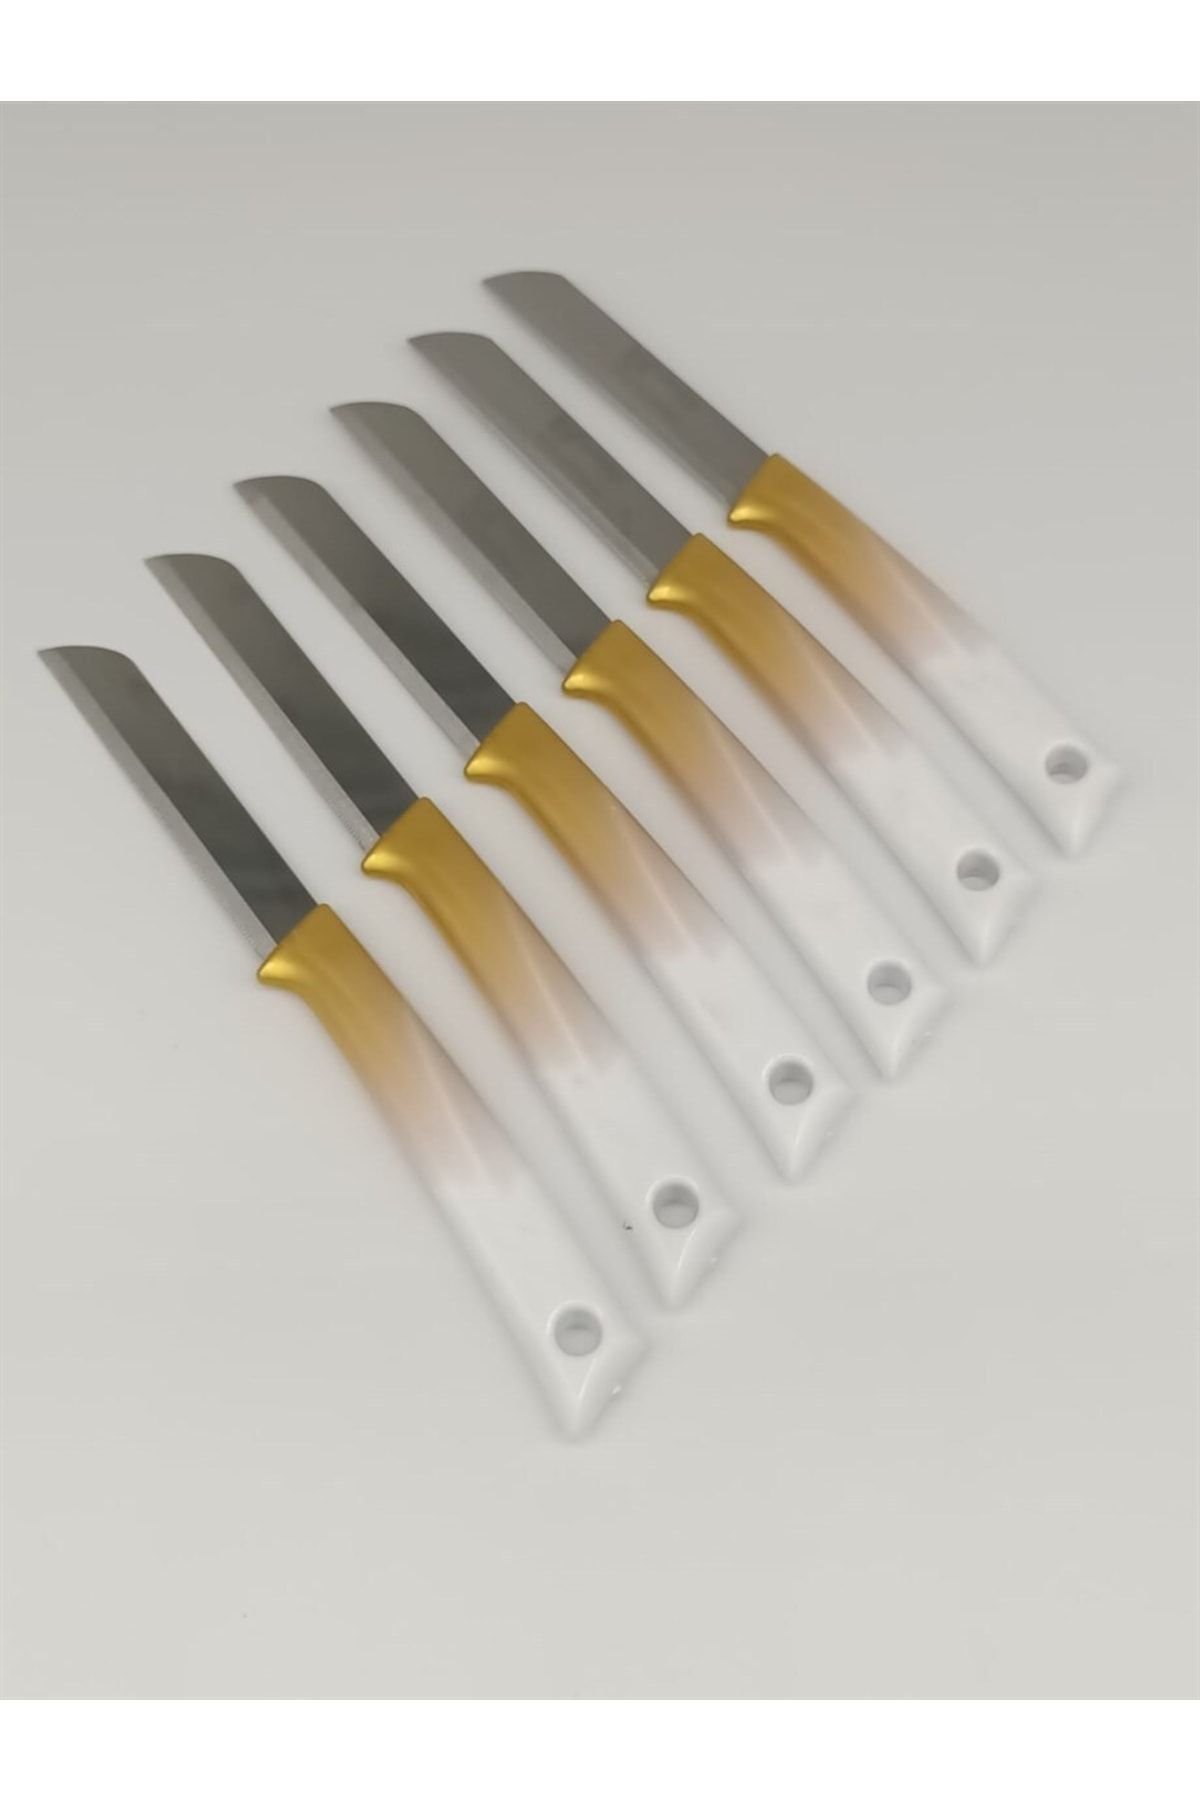 Solingen Mutfak Bıçak Seti 6'lı Et Ekmek Sebze Meyve Soğan Börek Et Şef Bıçağı Kaymaz Saplı